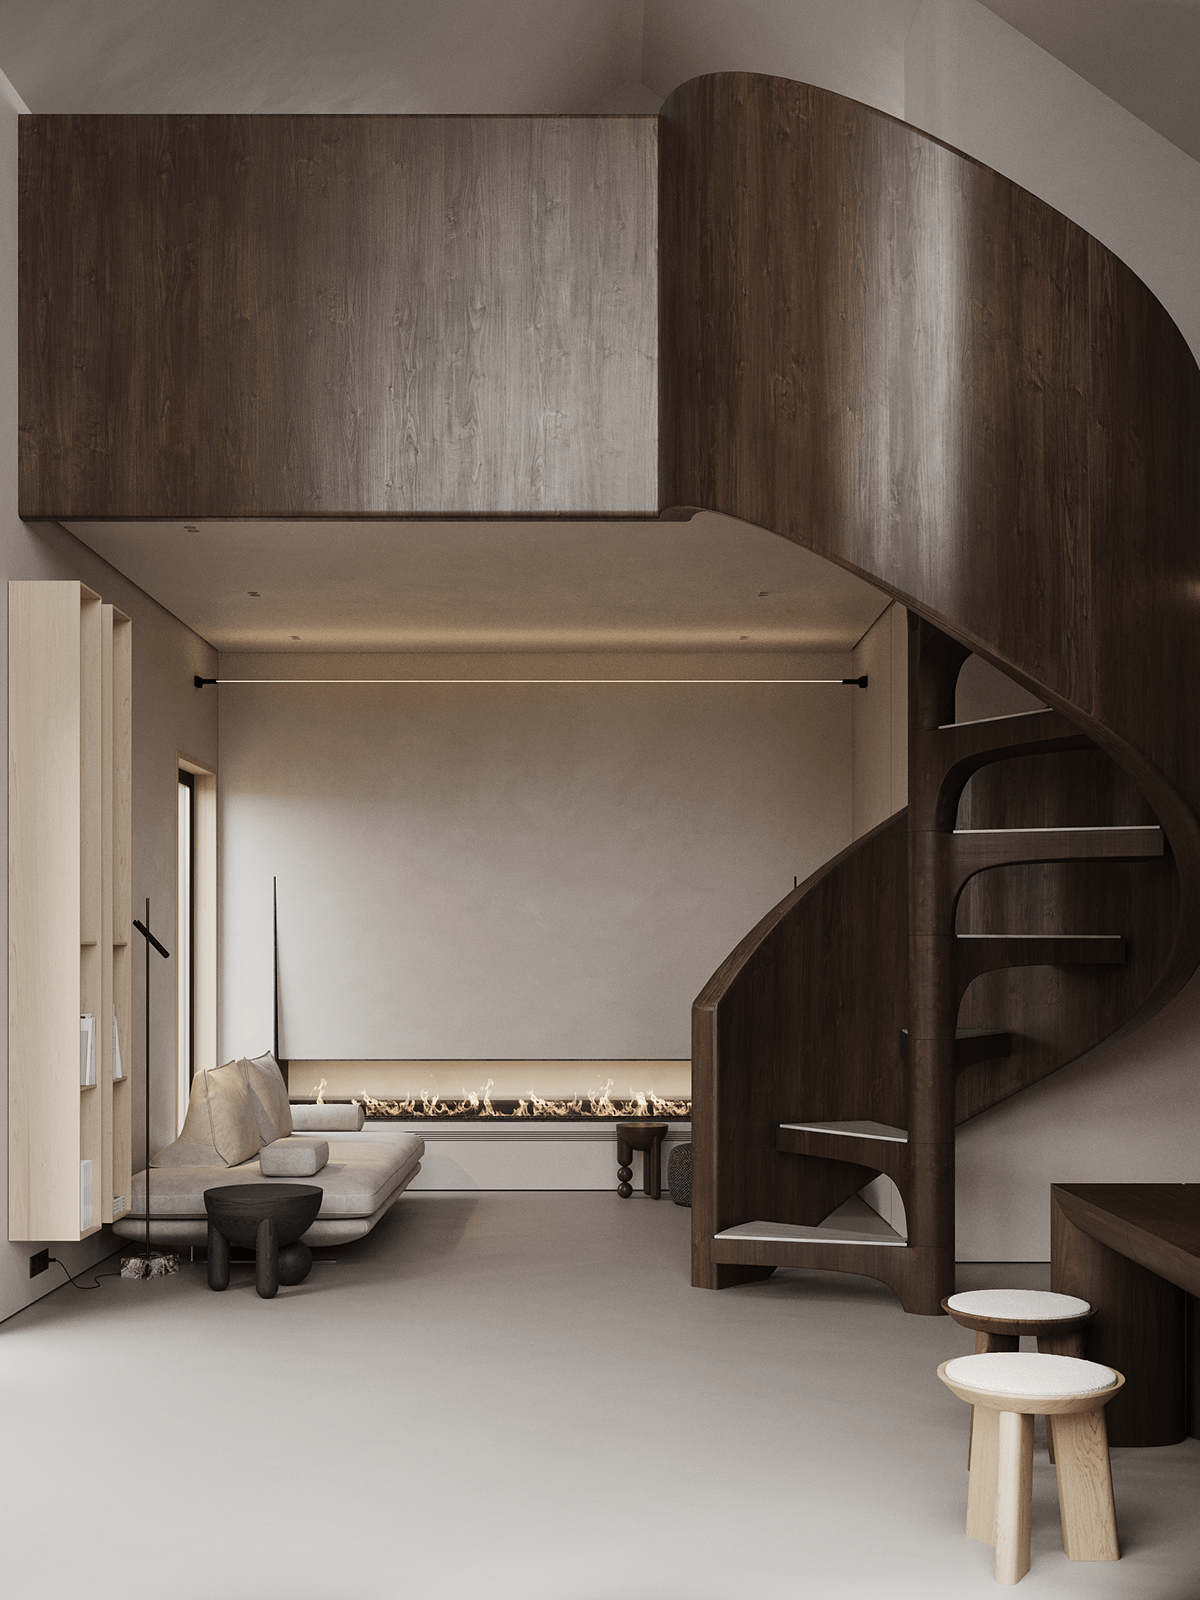 原木旋轉樓梯成為整個樓中樓的重點之一，開放式的空間讓光線可以輕鬆貫穿整個空間